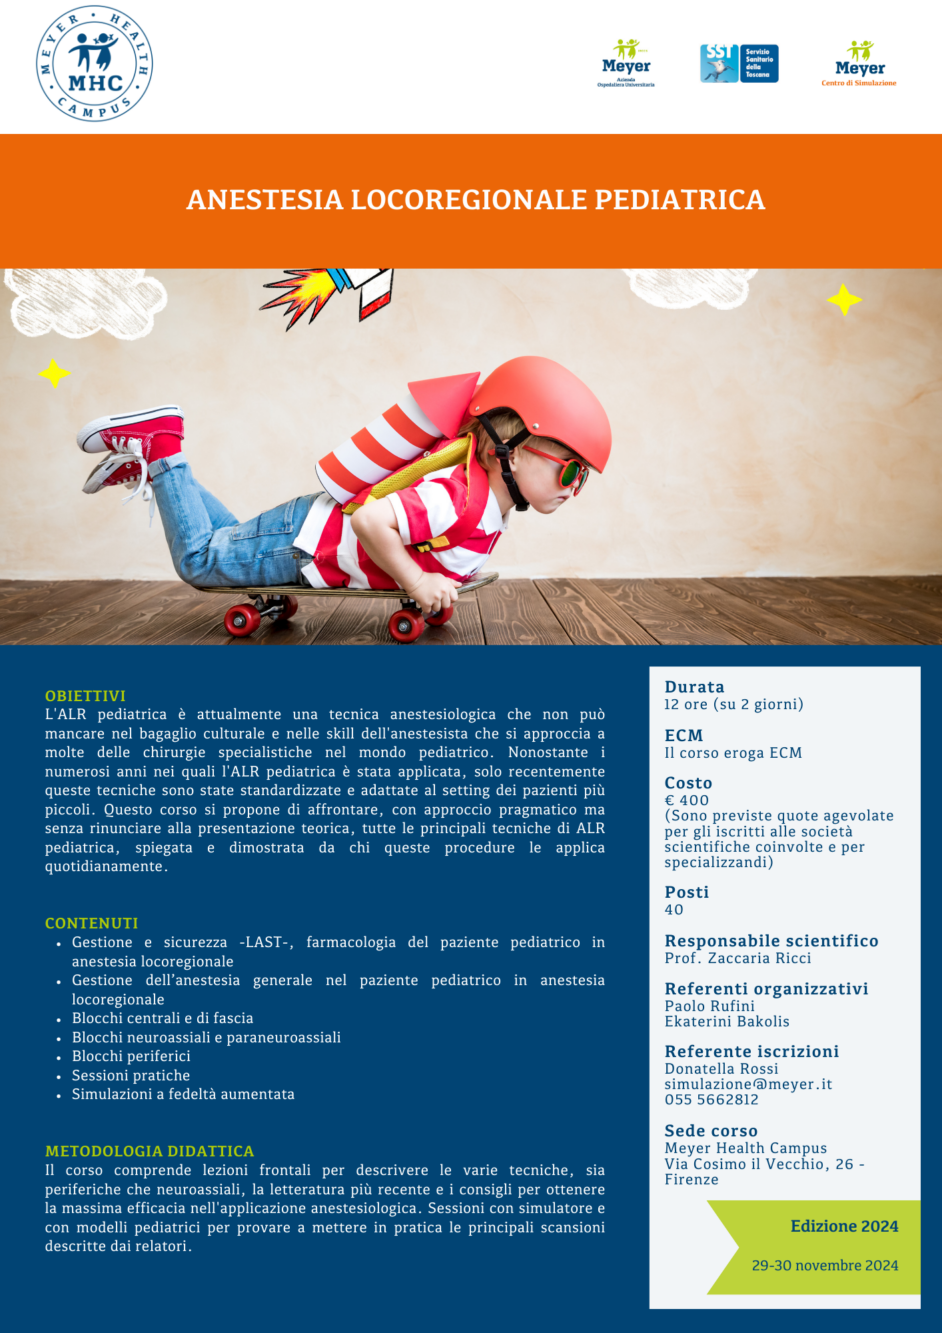 Anestesia locoregionale pediatrica (29-30 novembre 2024)